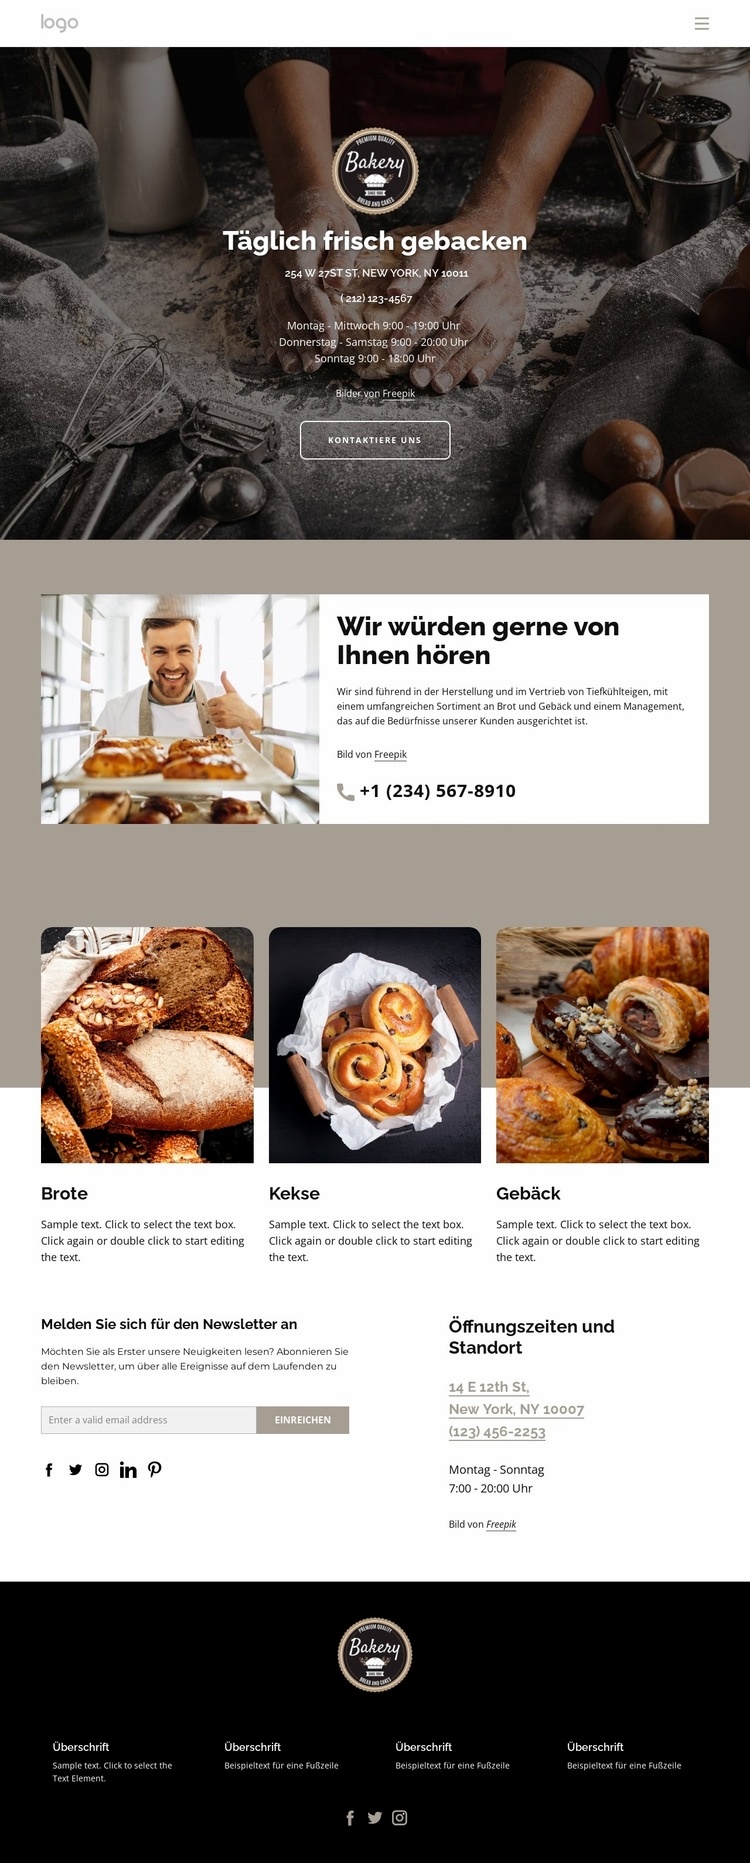 Täglich frisches Brot gebacken Website design